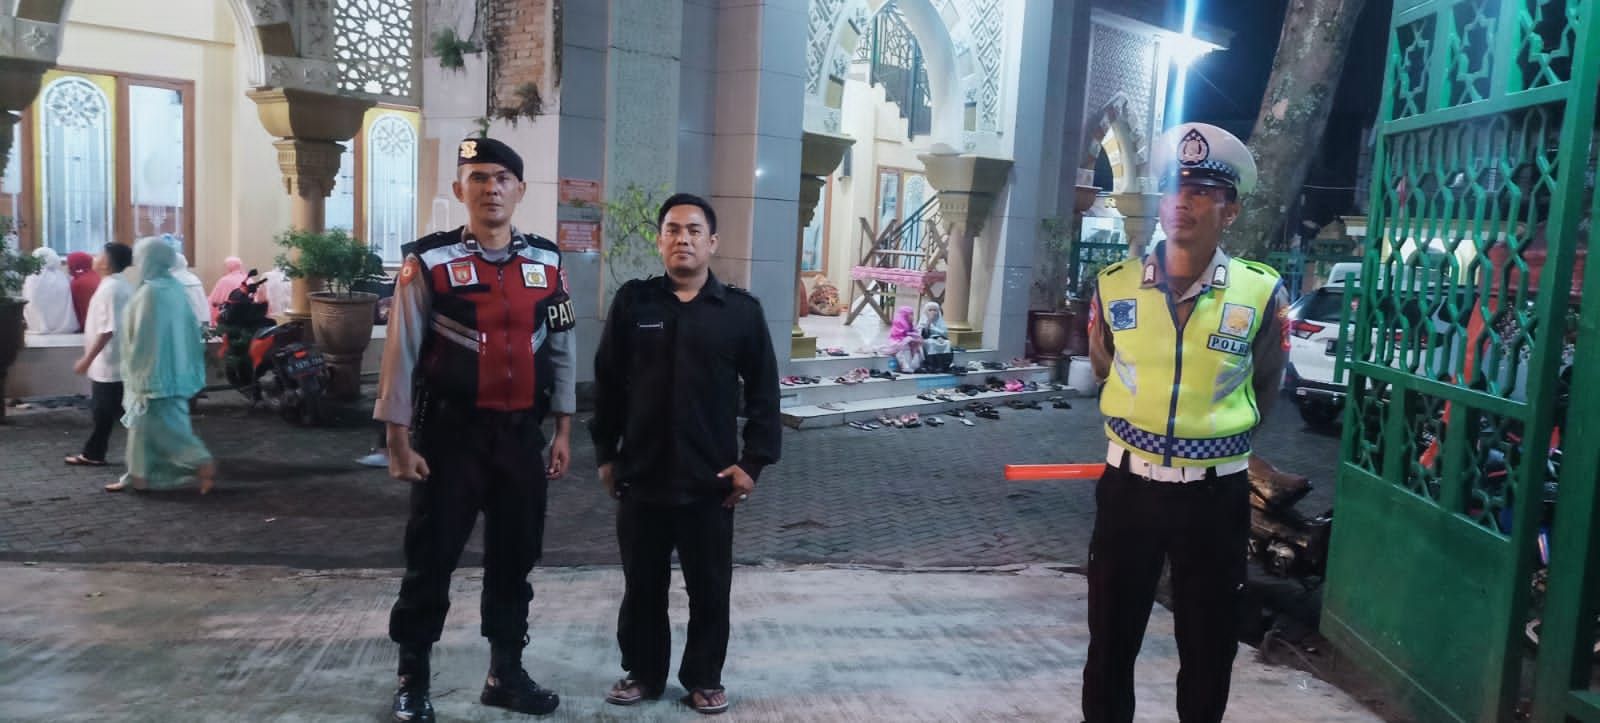 Polresta Bandung Kerahkan Personel ke Tiap Masjid pada Taraweh Pertama di Bulan Ramadhan, Ini Tujuannya 